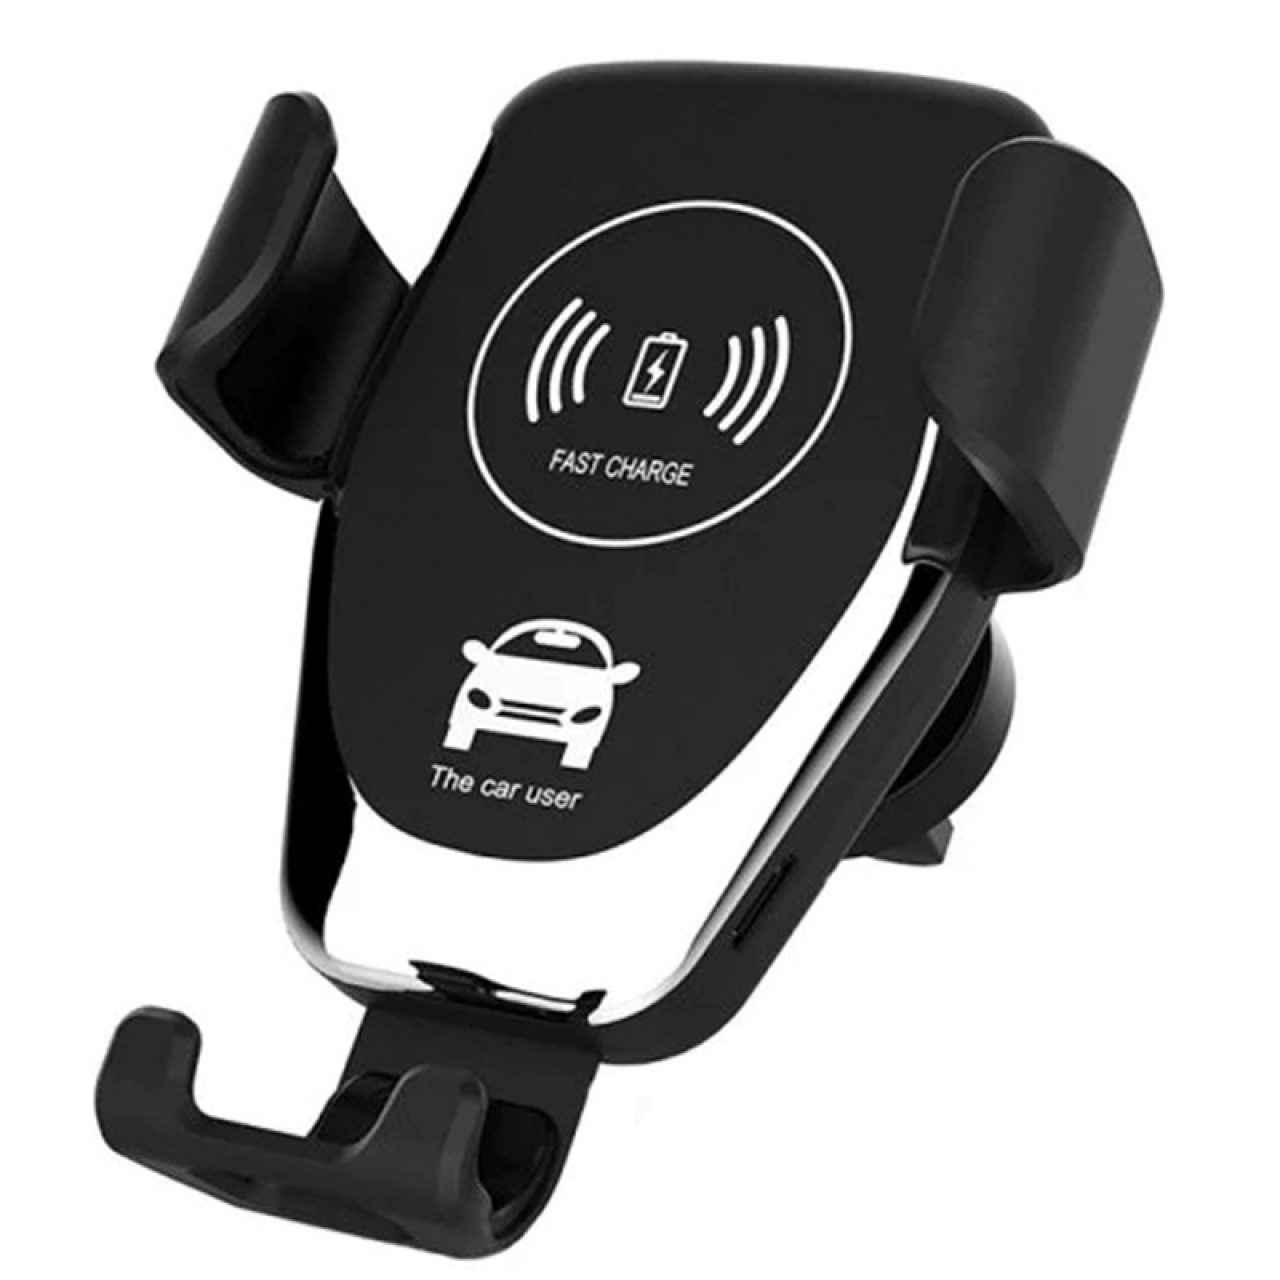 Έξυπνη Βάση στήριξης κινητού με ασύρματη φόρτιση - Wireless Car Mobile Holder - WIRELESS CAR